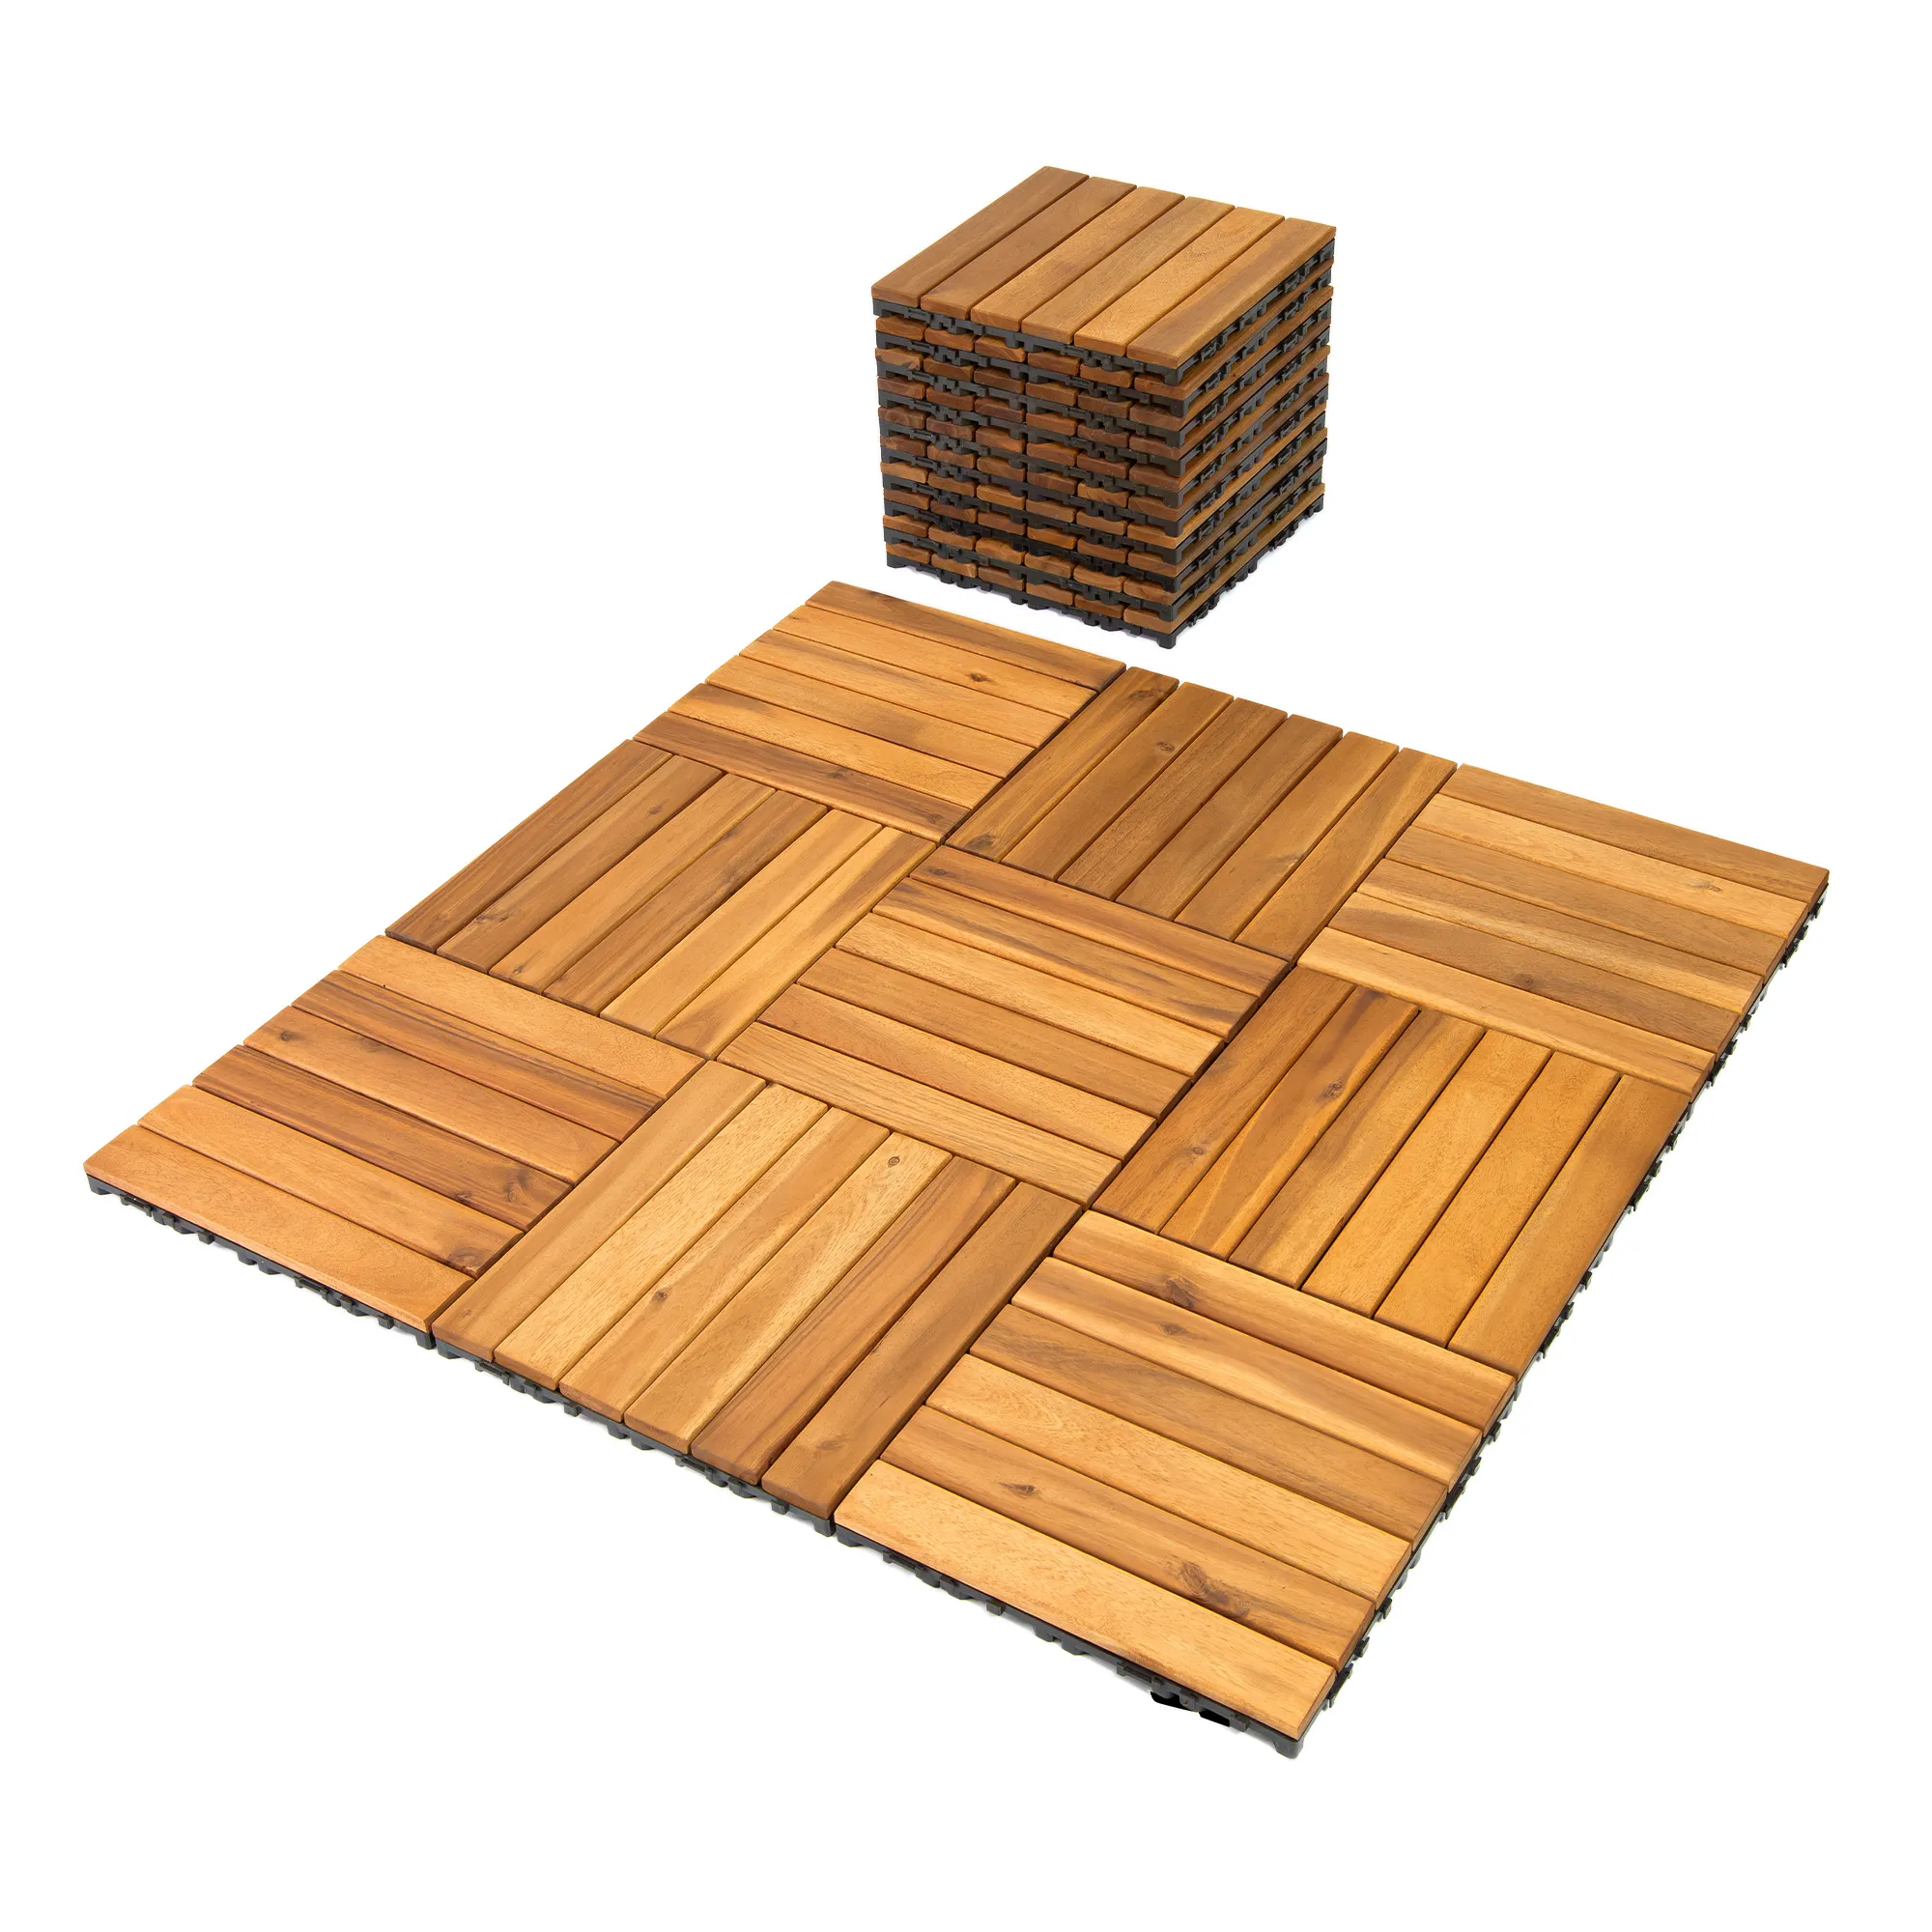 Novo item quente HPW-03 piso de azulejos para varanda ao ar livre piso de madeira textura de madeira maciça para decoração do Vietnã